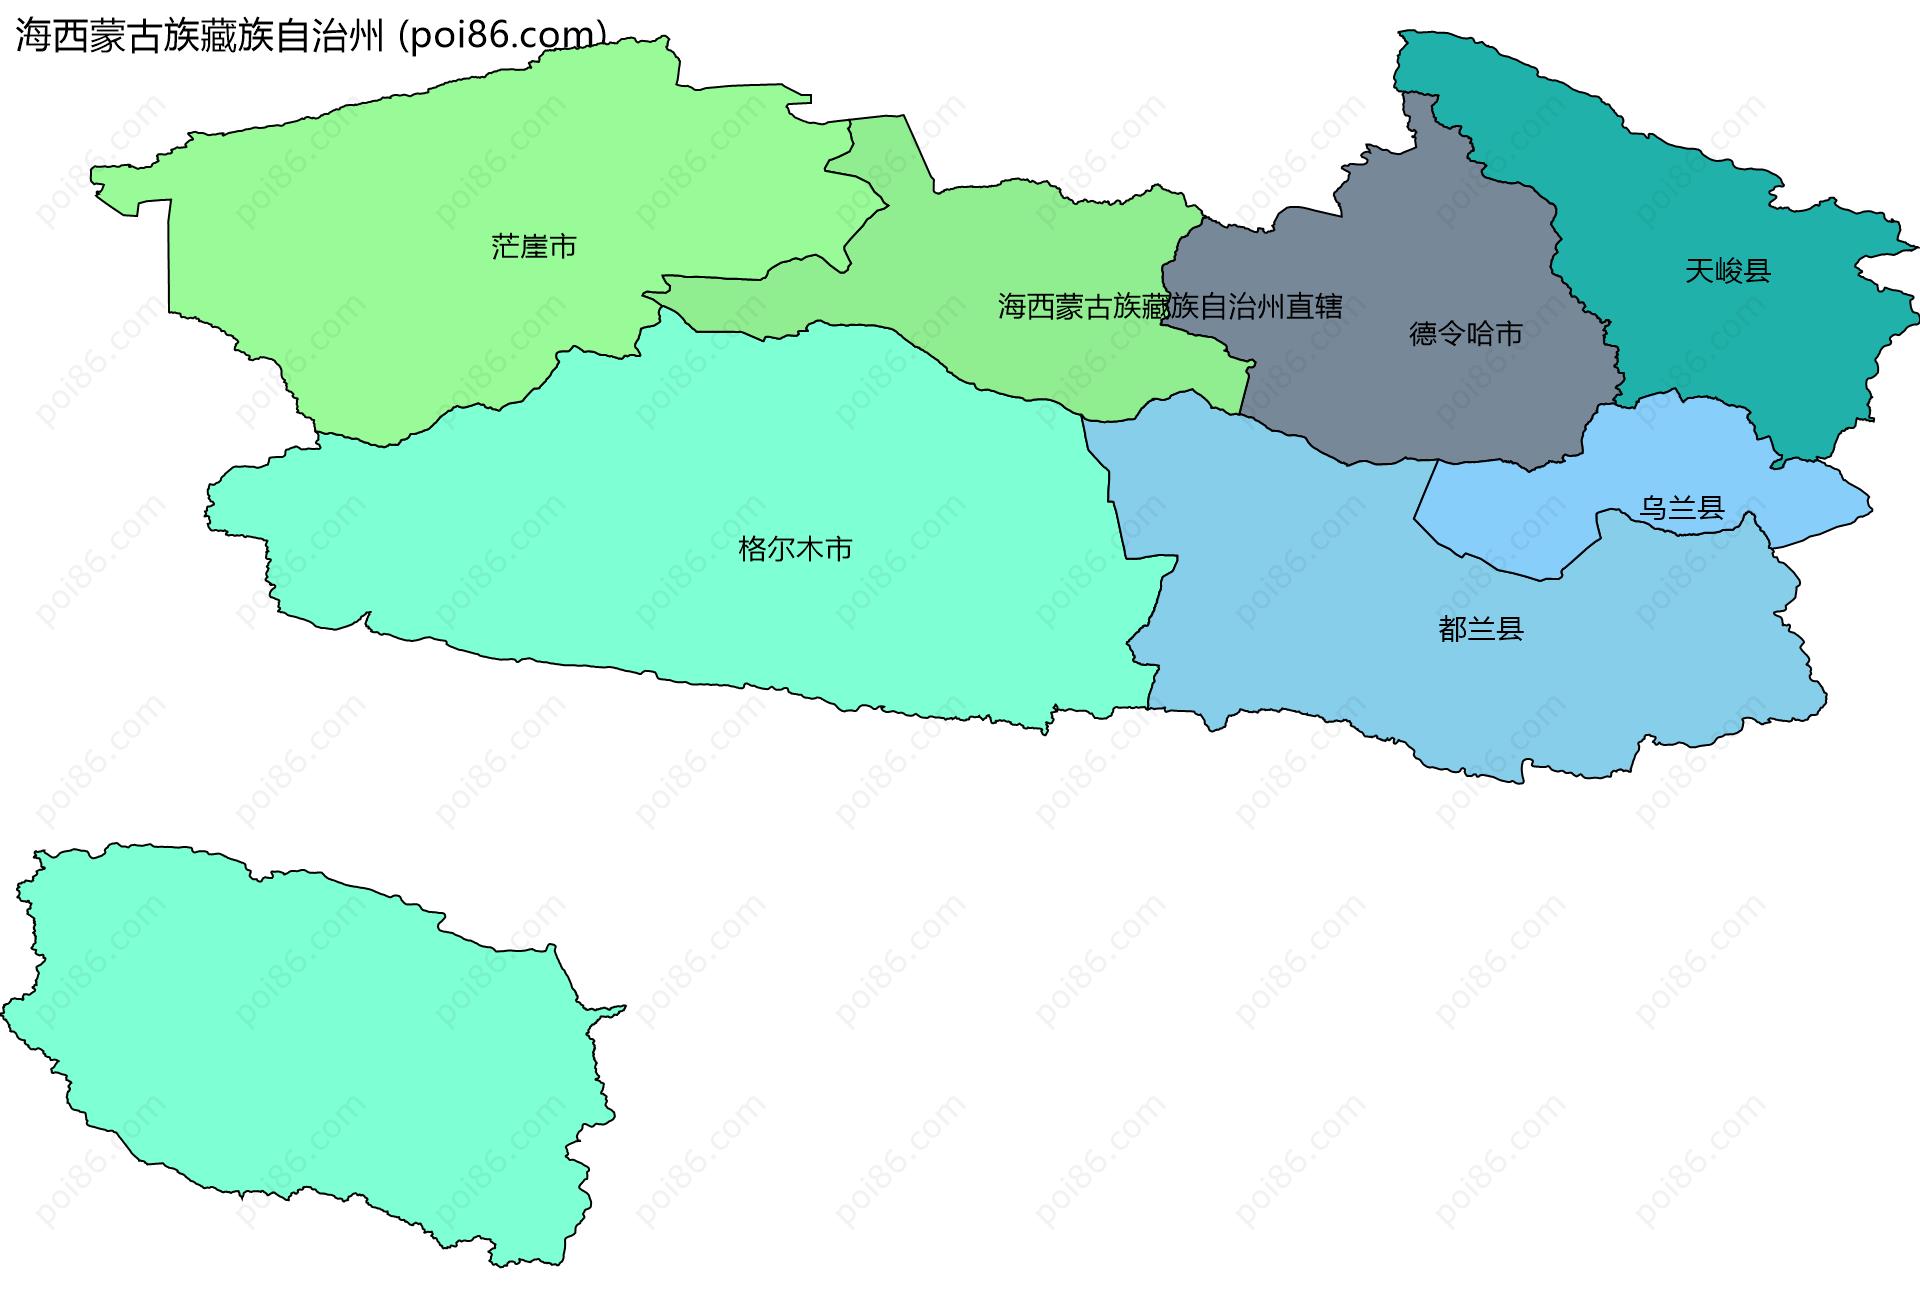 海西蒙古族藏族自治州边界地图